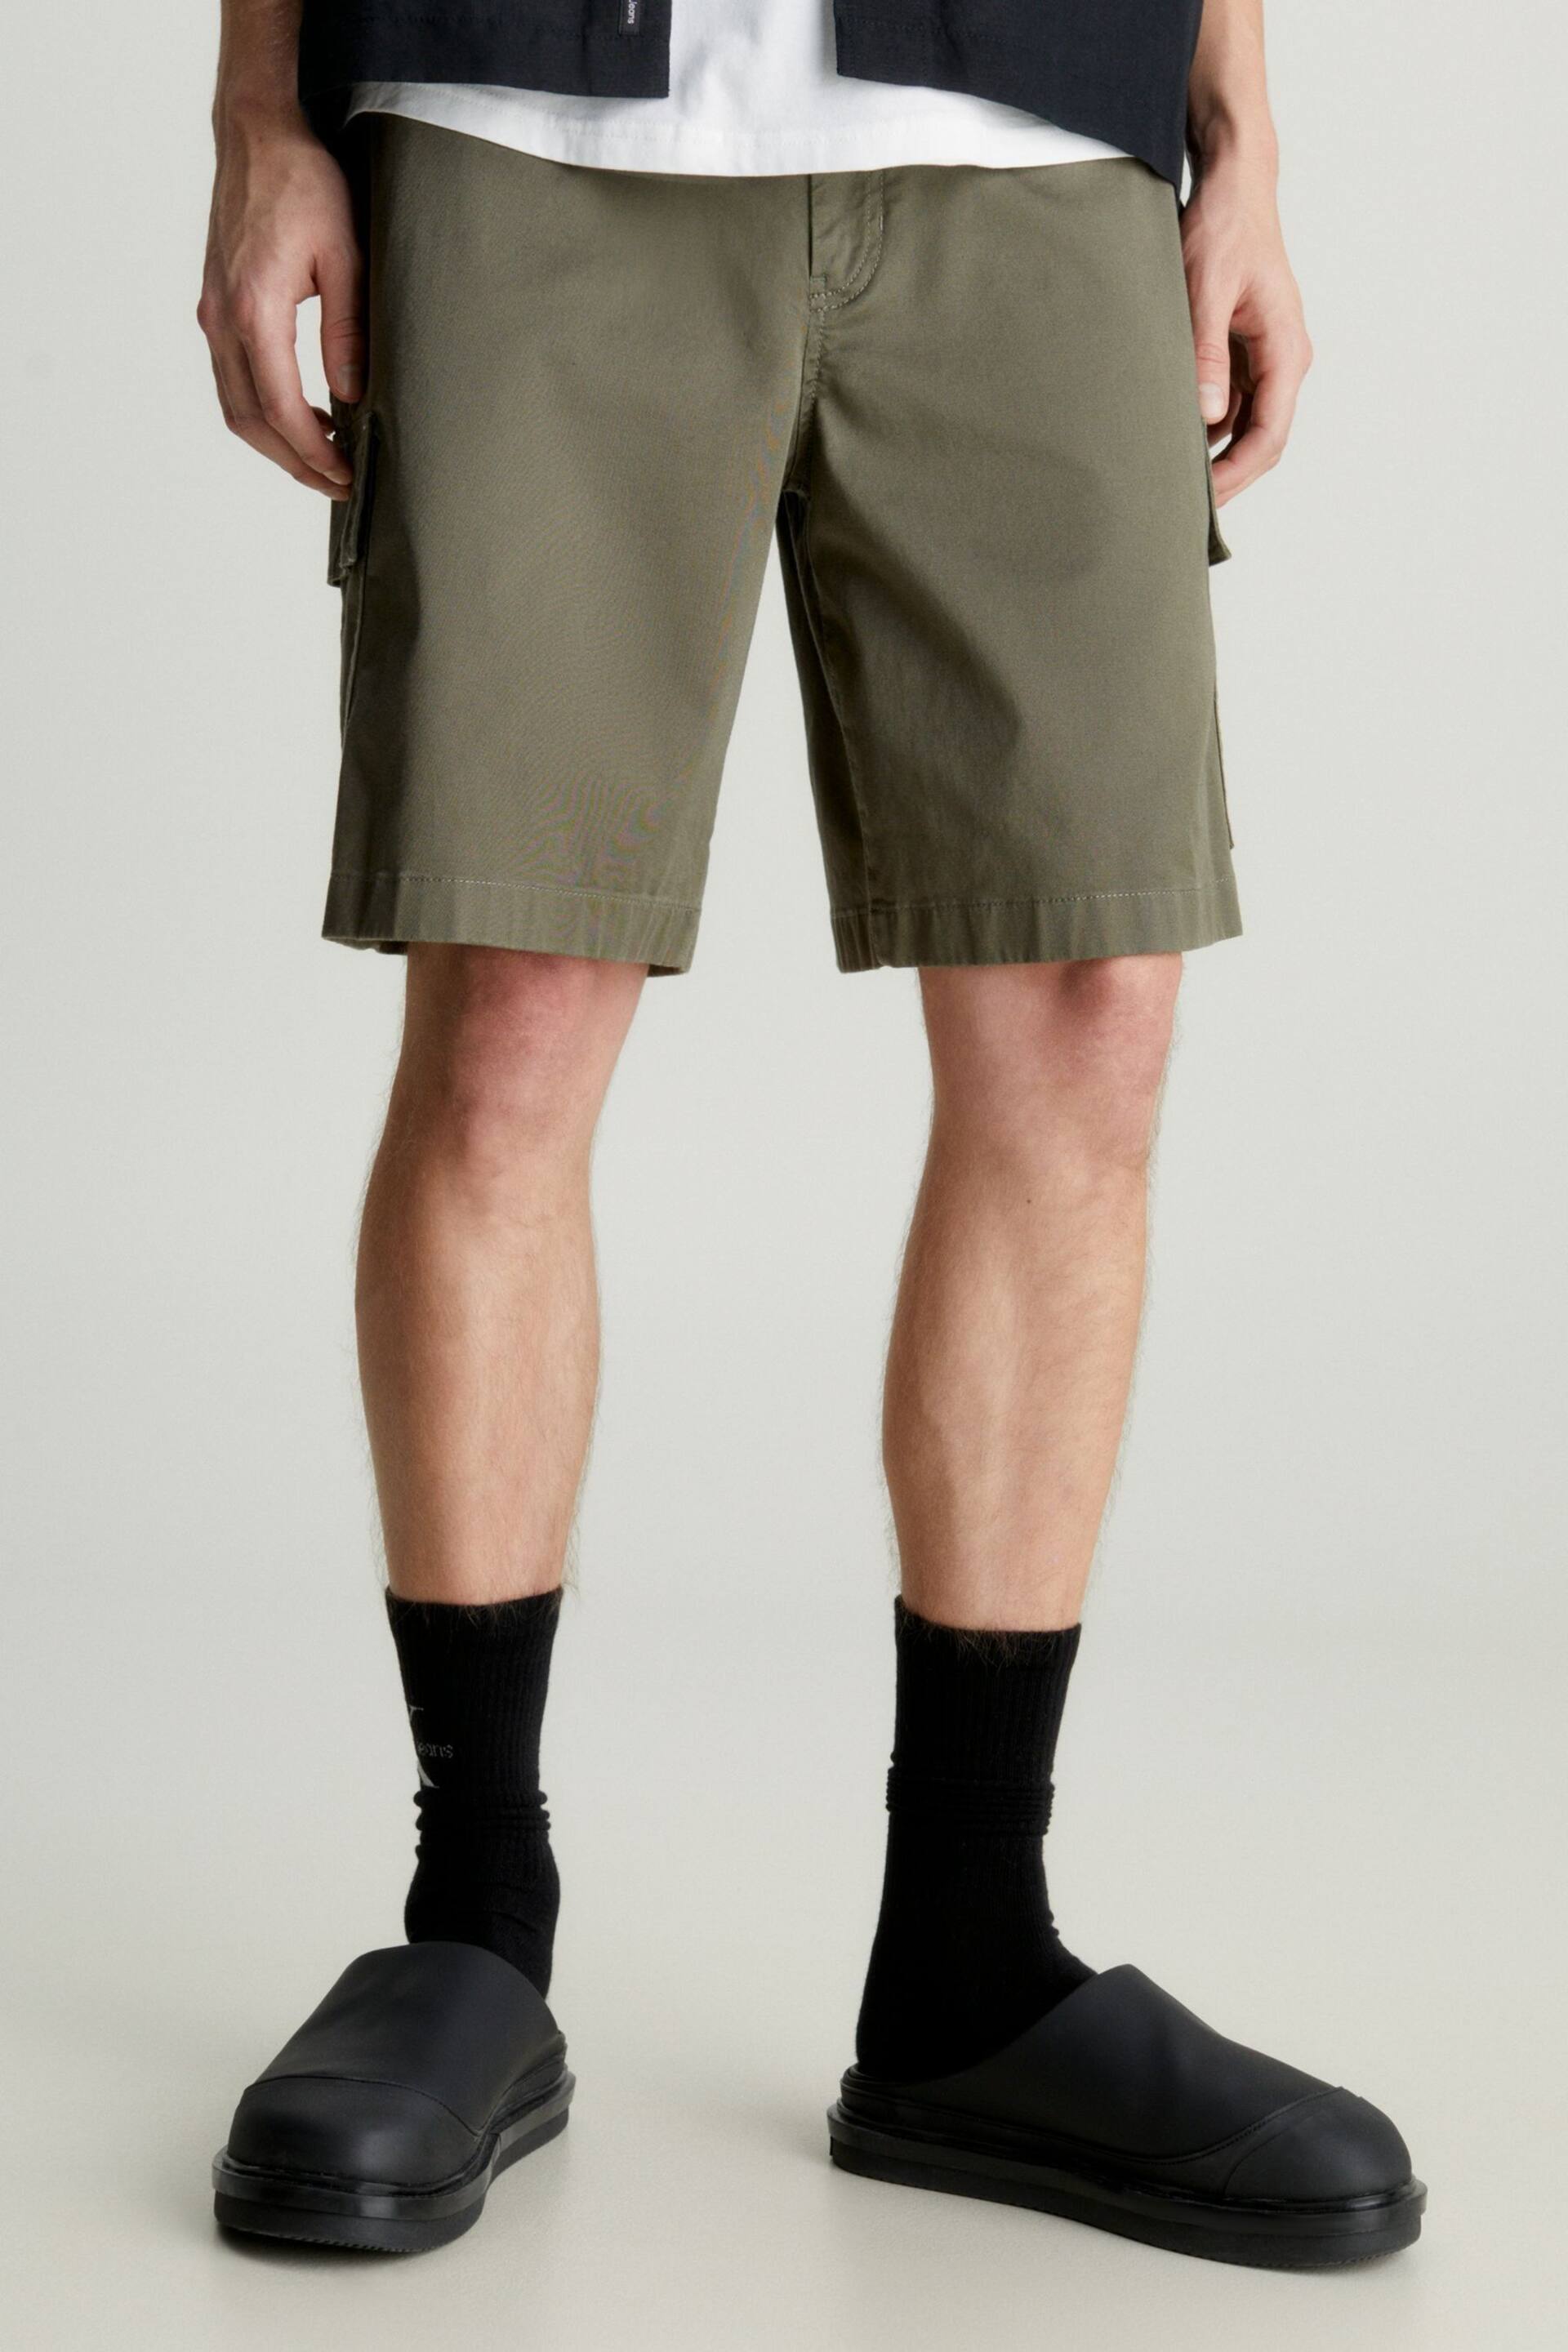 Calvin Klein Green Cargo Woven Shorts - Image 1 of 3